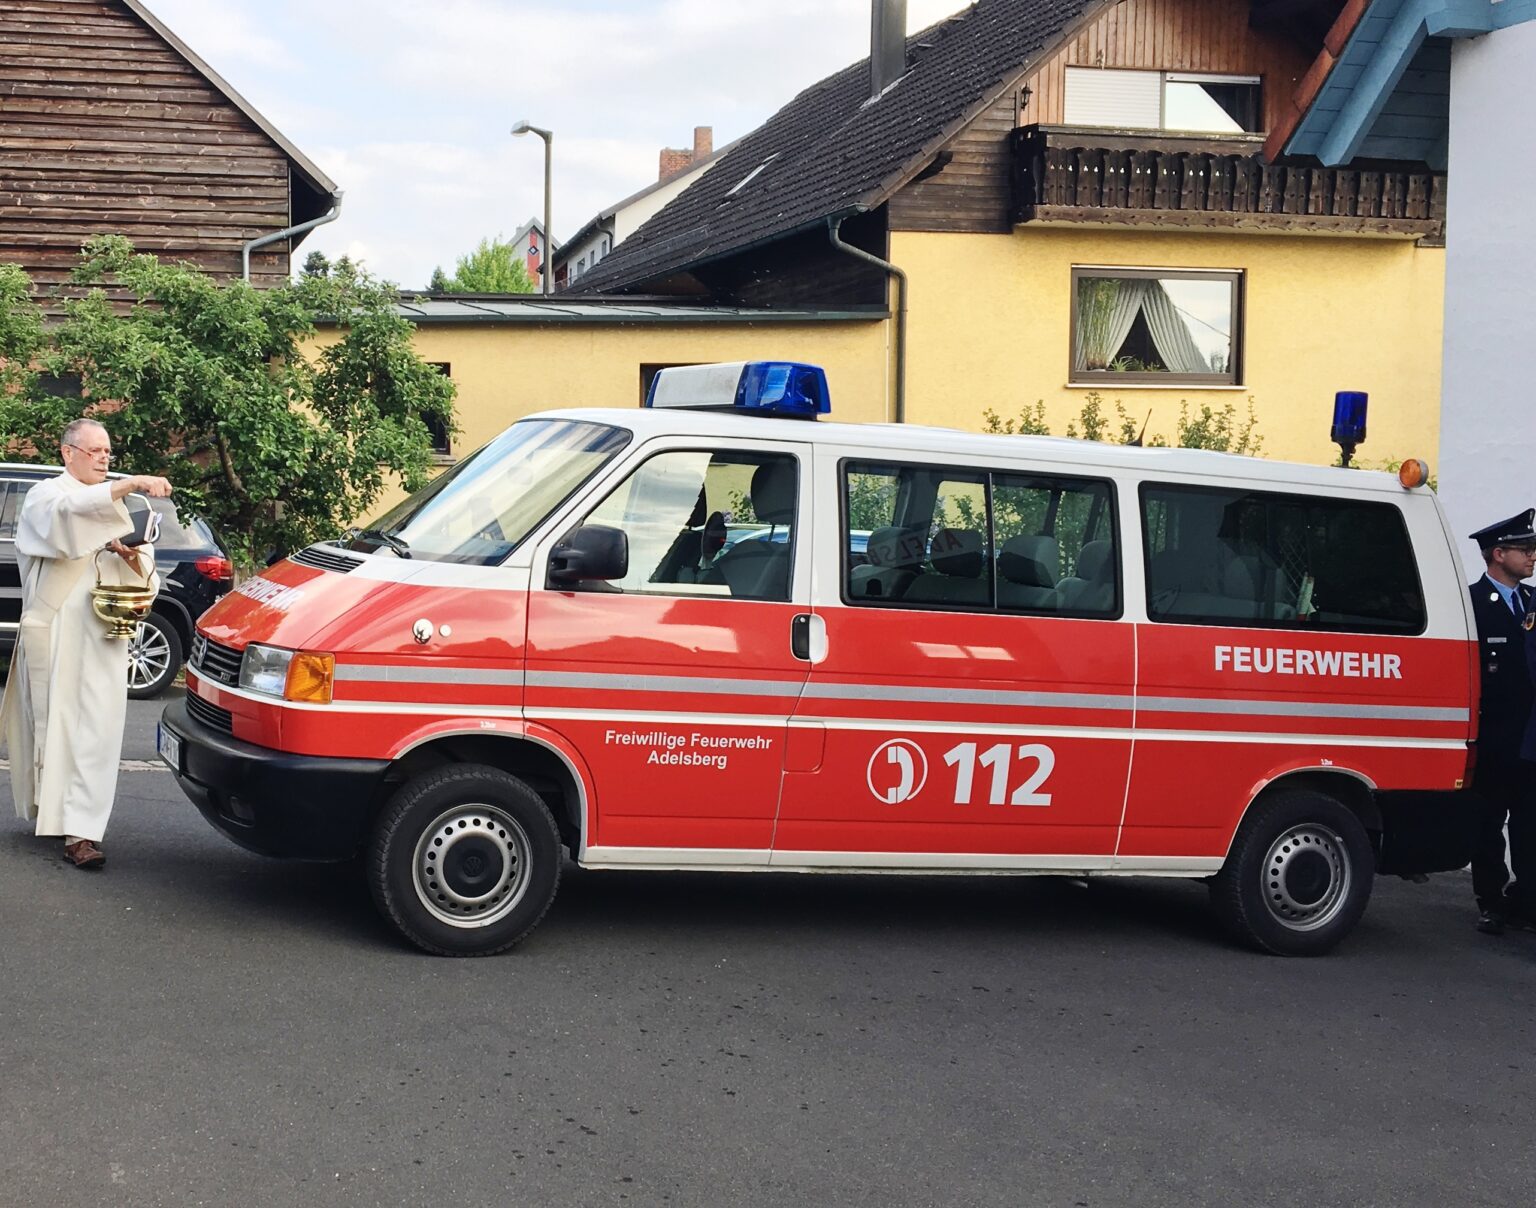 Freiwillige Feuerwehr Adelsberg - Feuerwehrauto